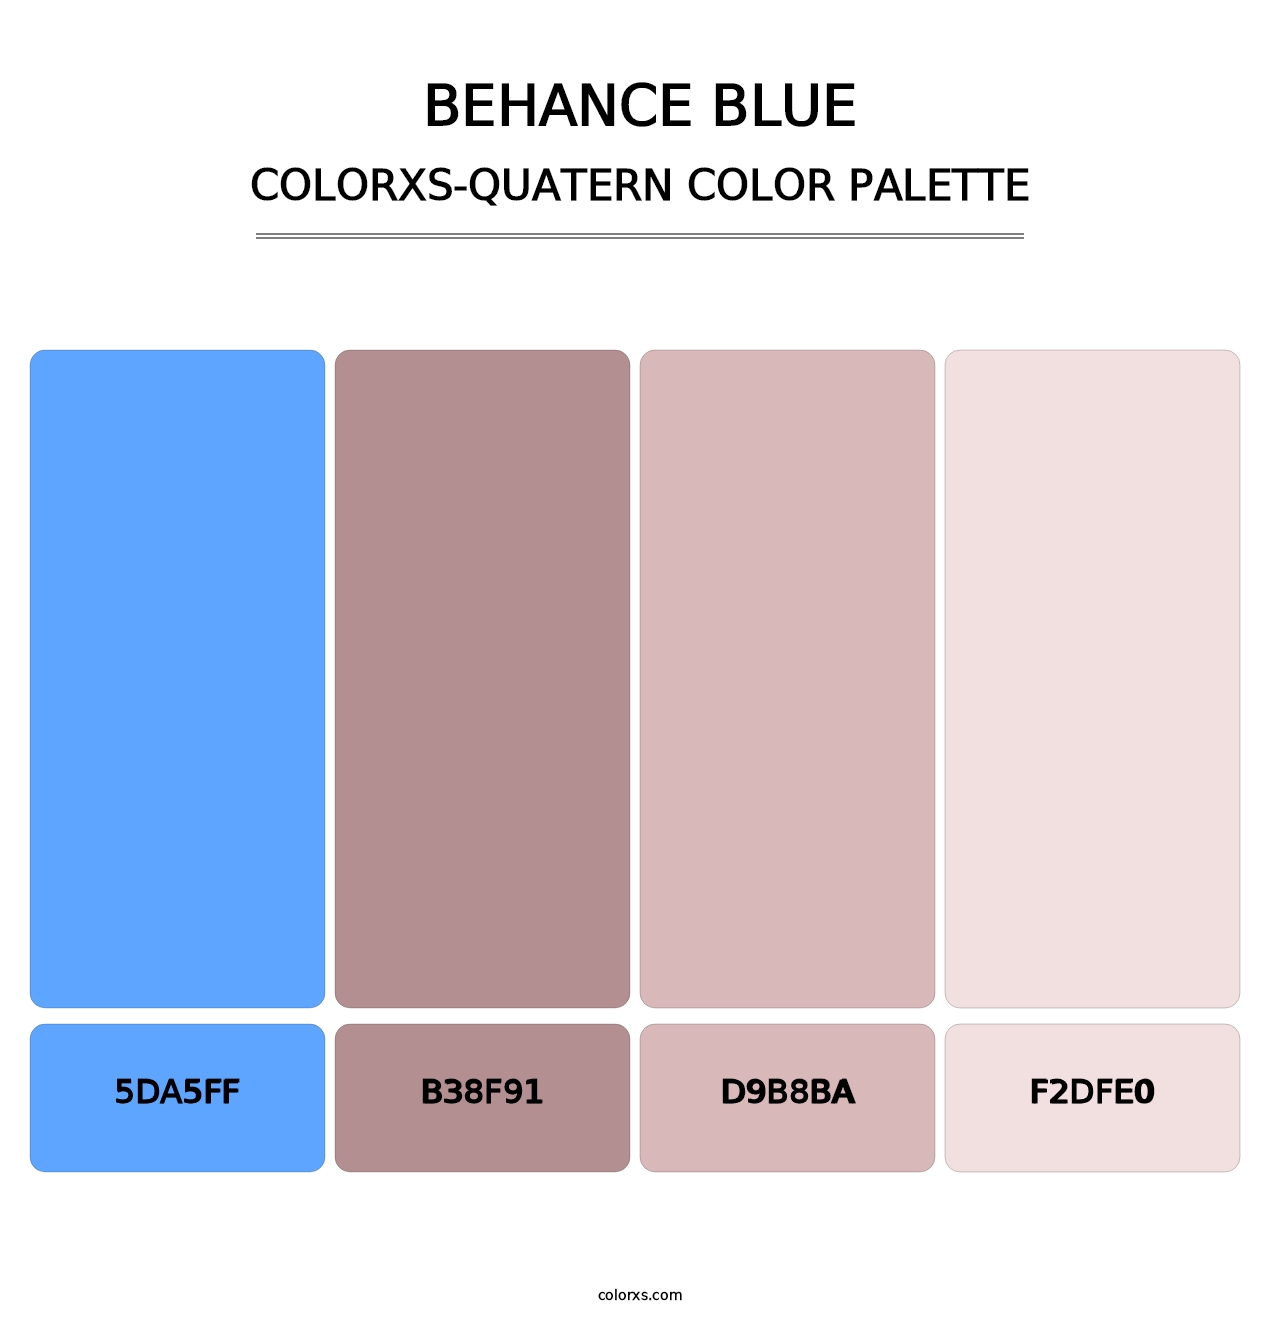 Behance Blue - Colorxs Quatern Palette